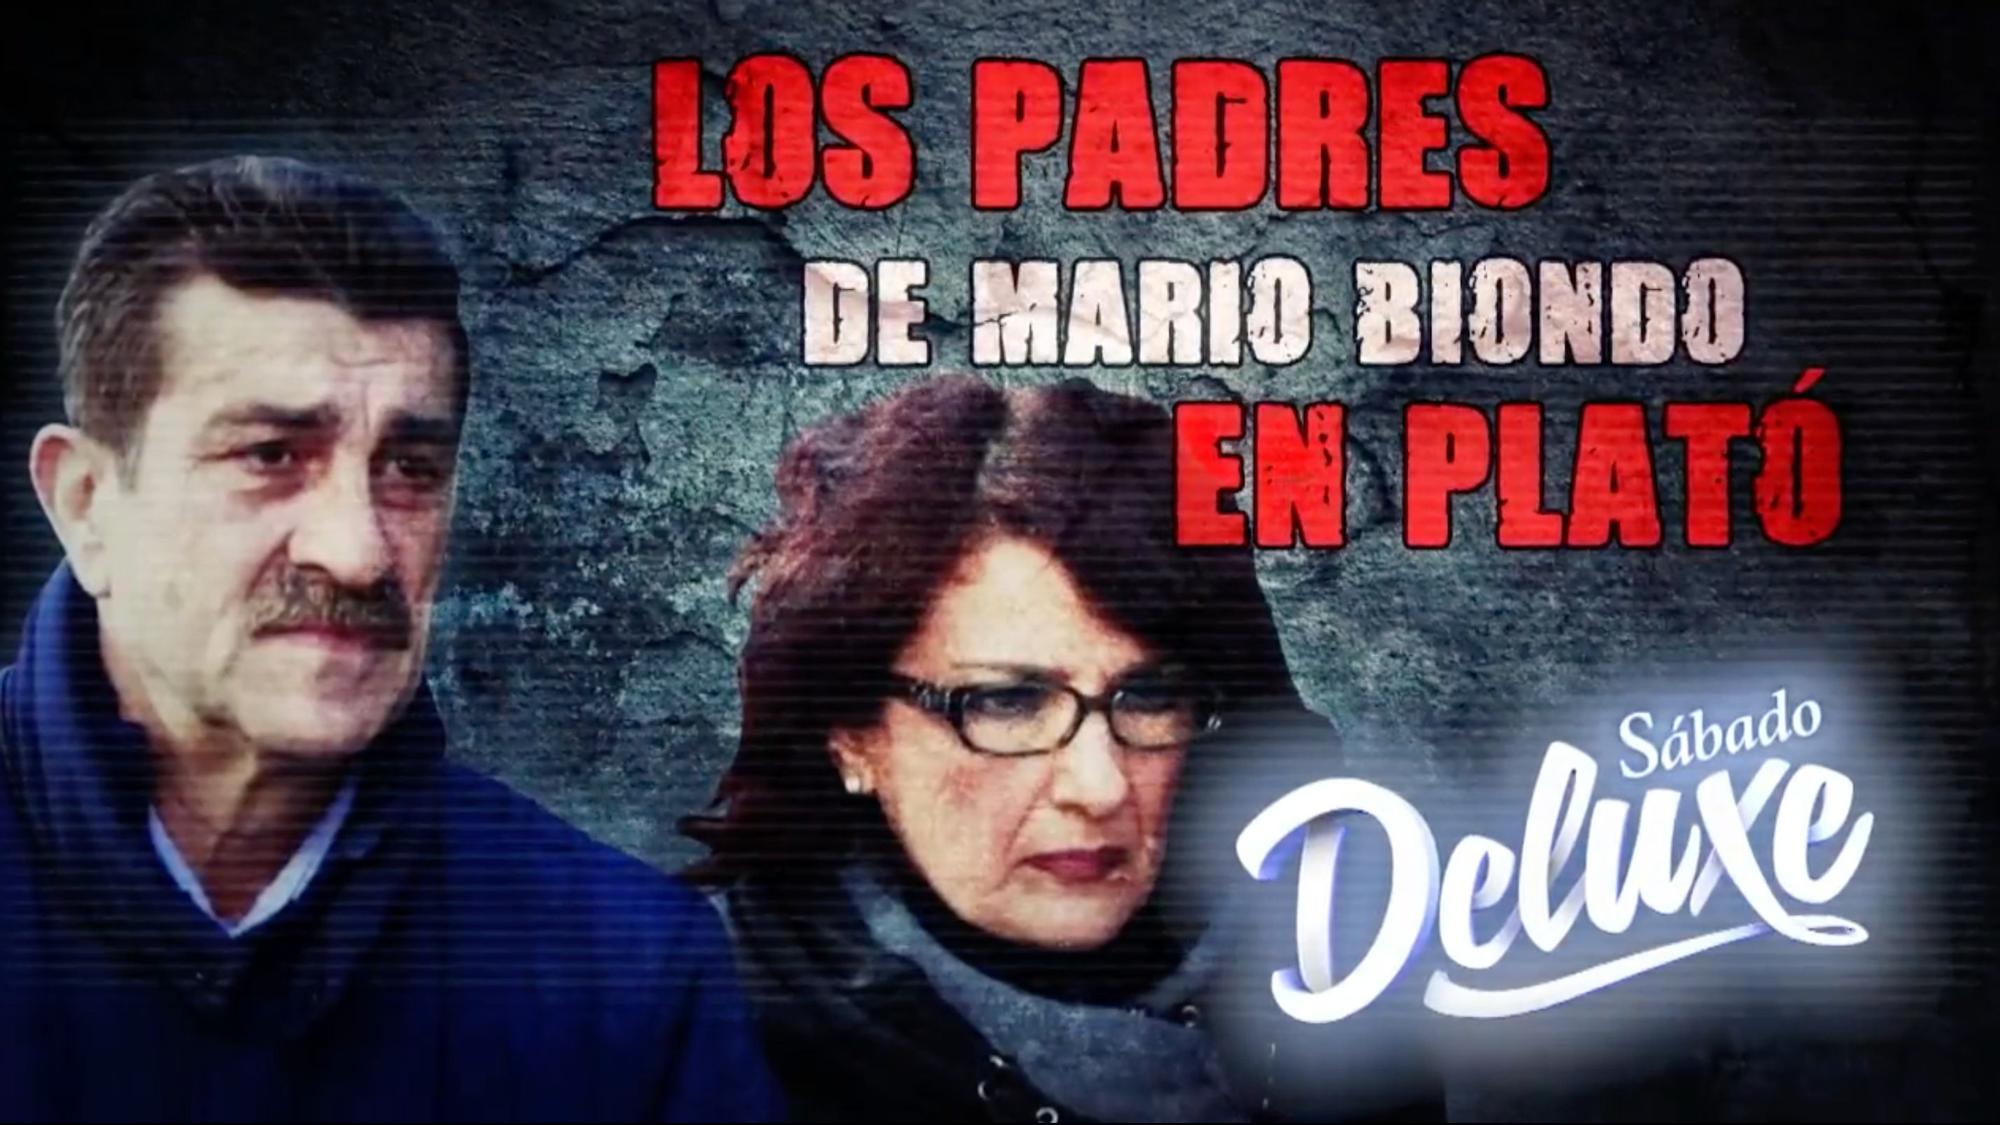 Imagen de la promo de la entrevista en el 'Deluxe' a los padres de Mario Biondo